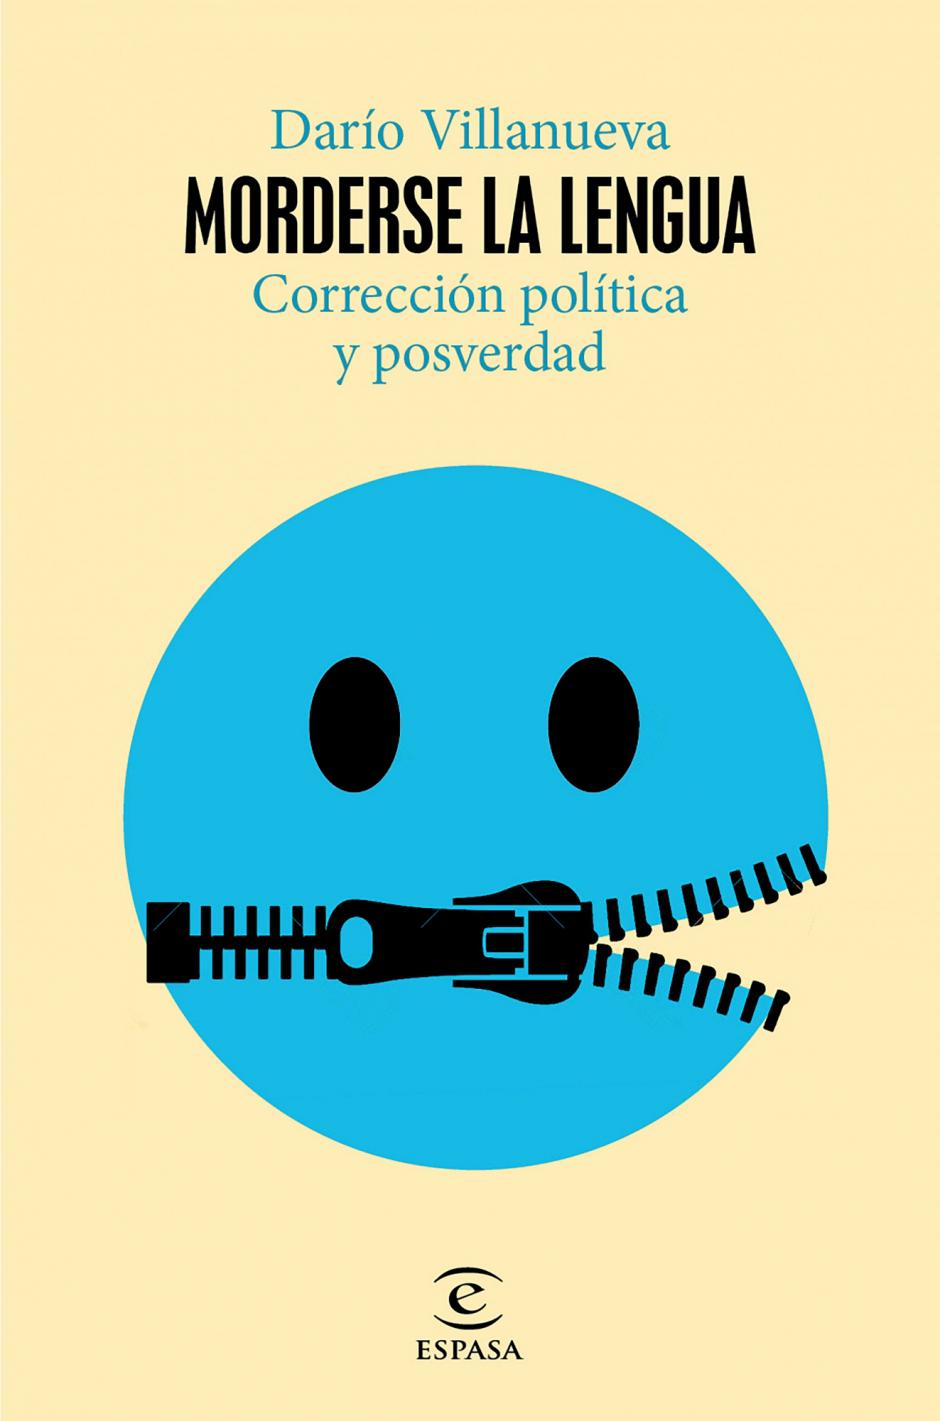 El libro premiado, "Morderse la lengua", de Darío Villanueva